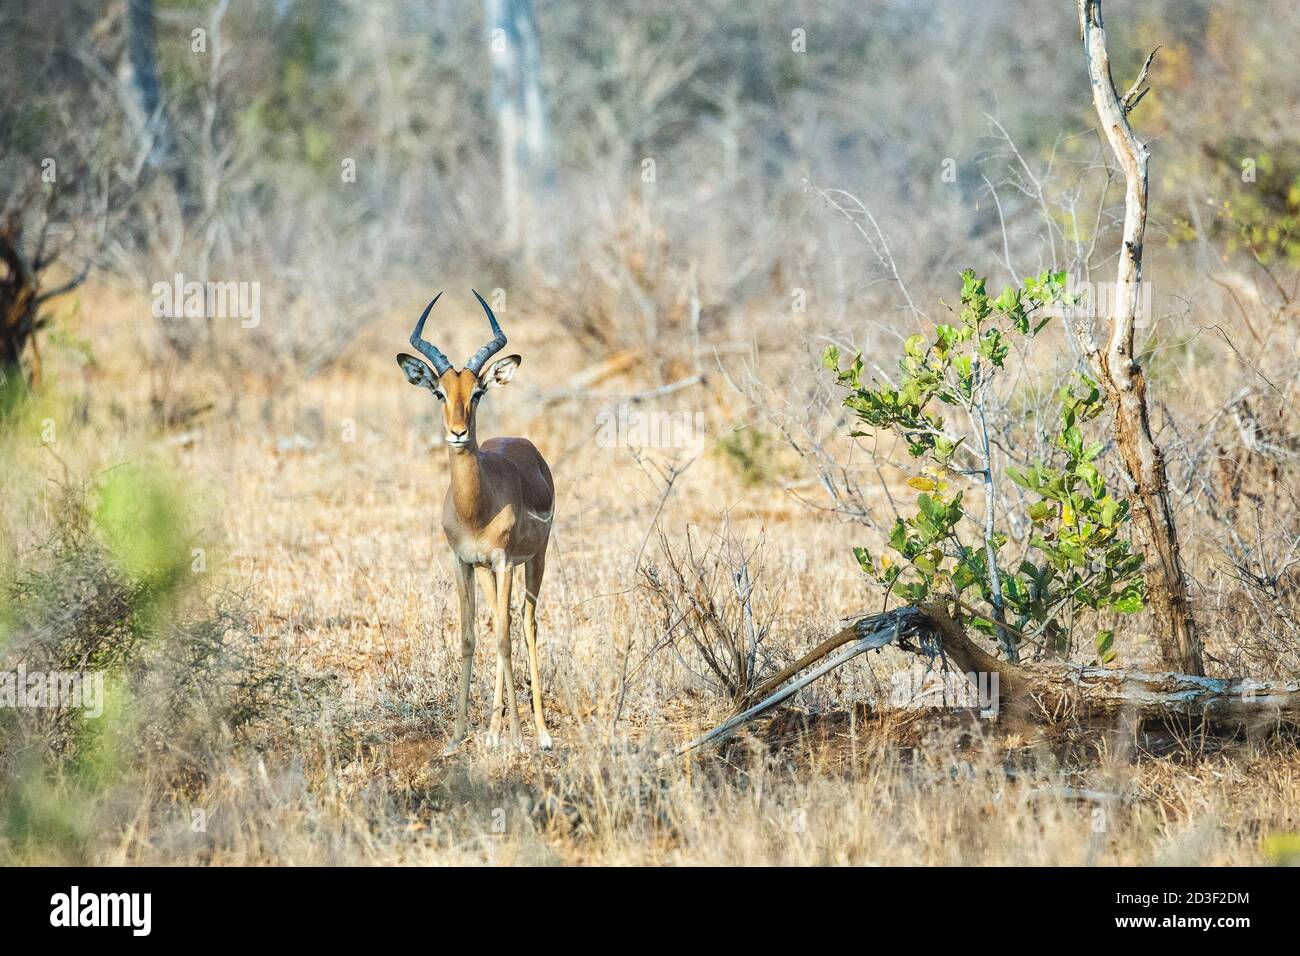 Wunderschönes junges Impala Männchen, das zwischen Bäumen und Sträuchern in einer südafrikanischen Landschaft steht. Flügelig in Richtung Kamera. Stockfoto